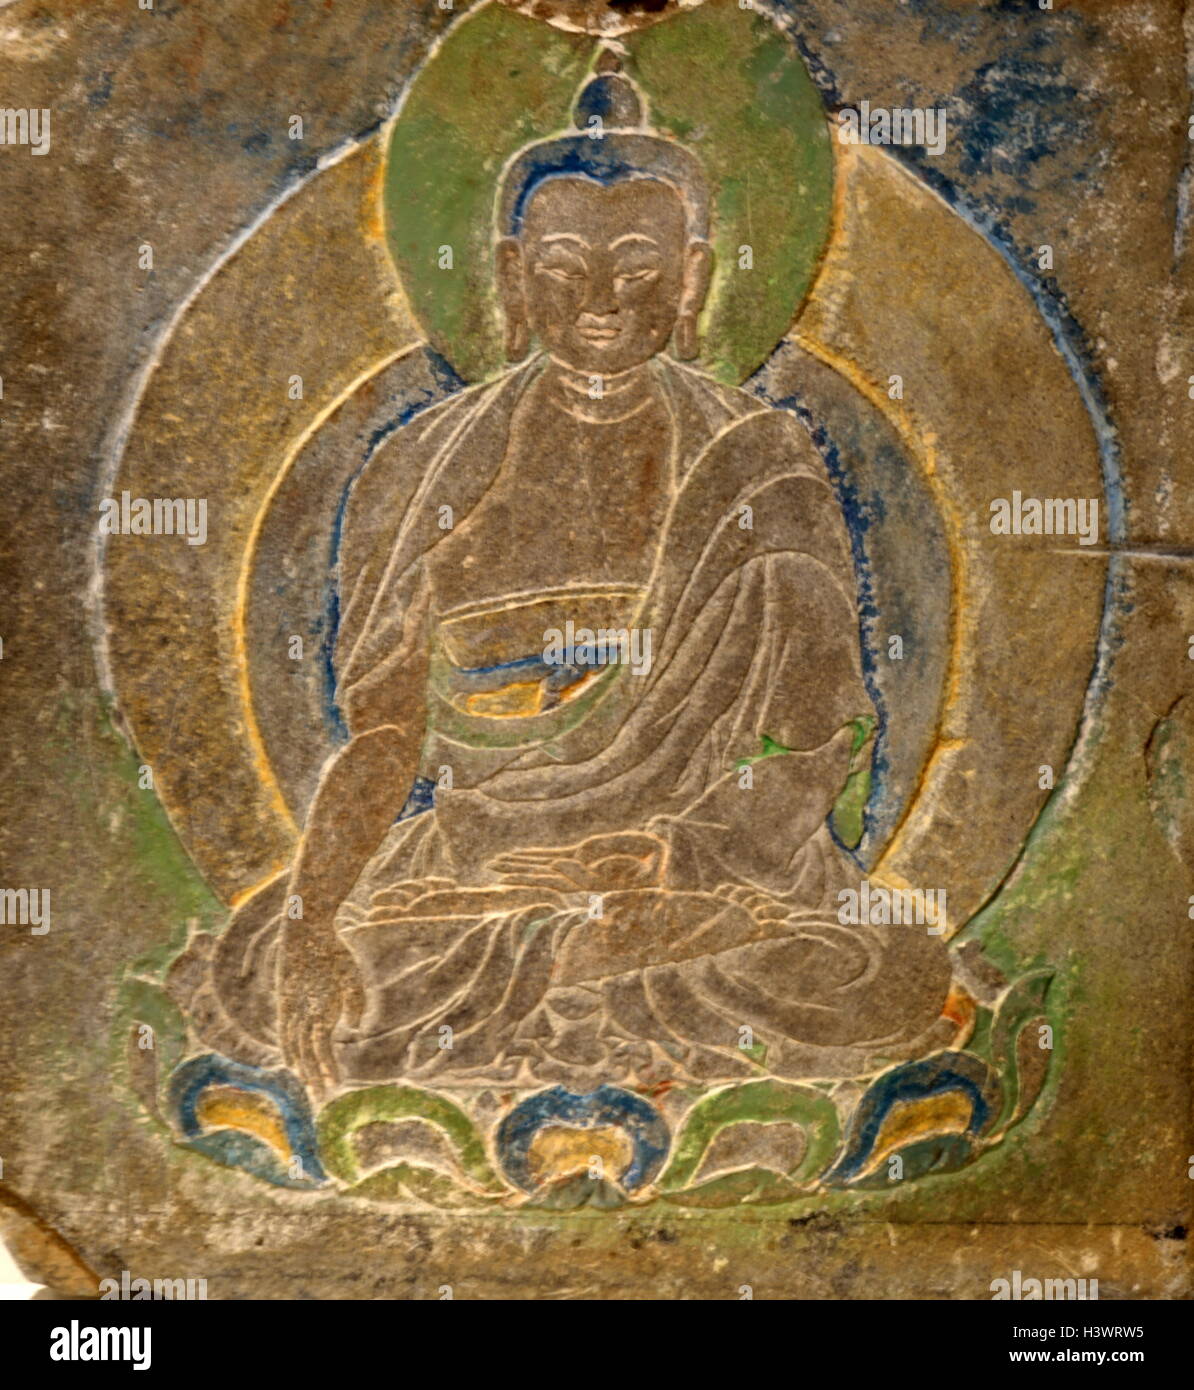 Stele votiva del Buddha Shakyamuni, fondatore della religione buddista. Datato al X secolo Foto Stock